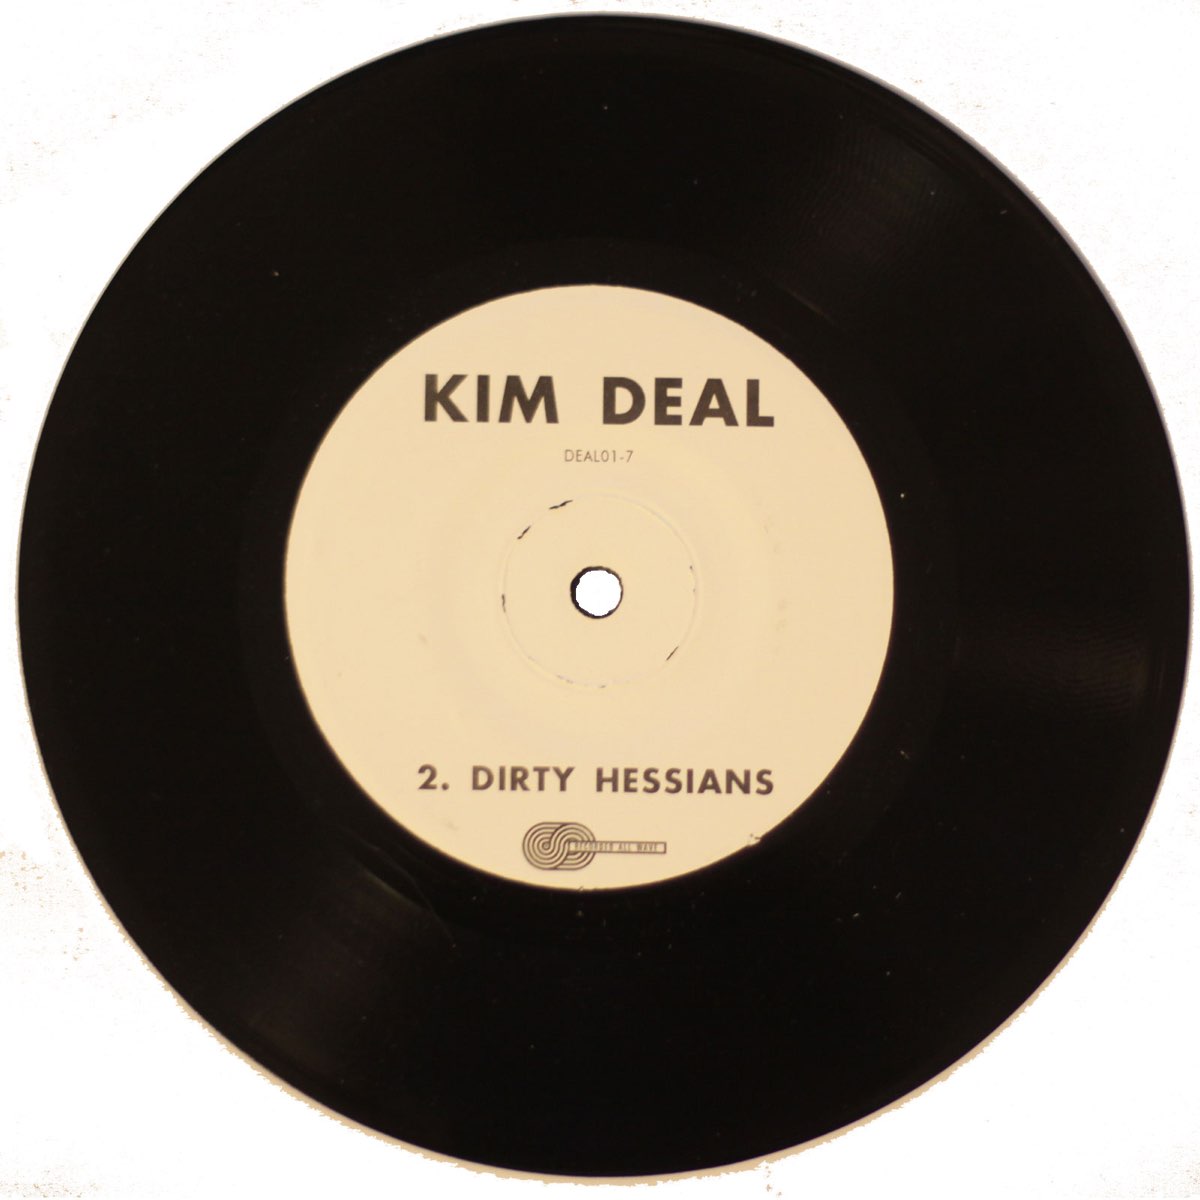 Kim deal 1989. Deal песня